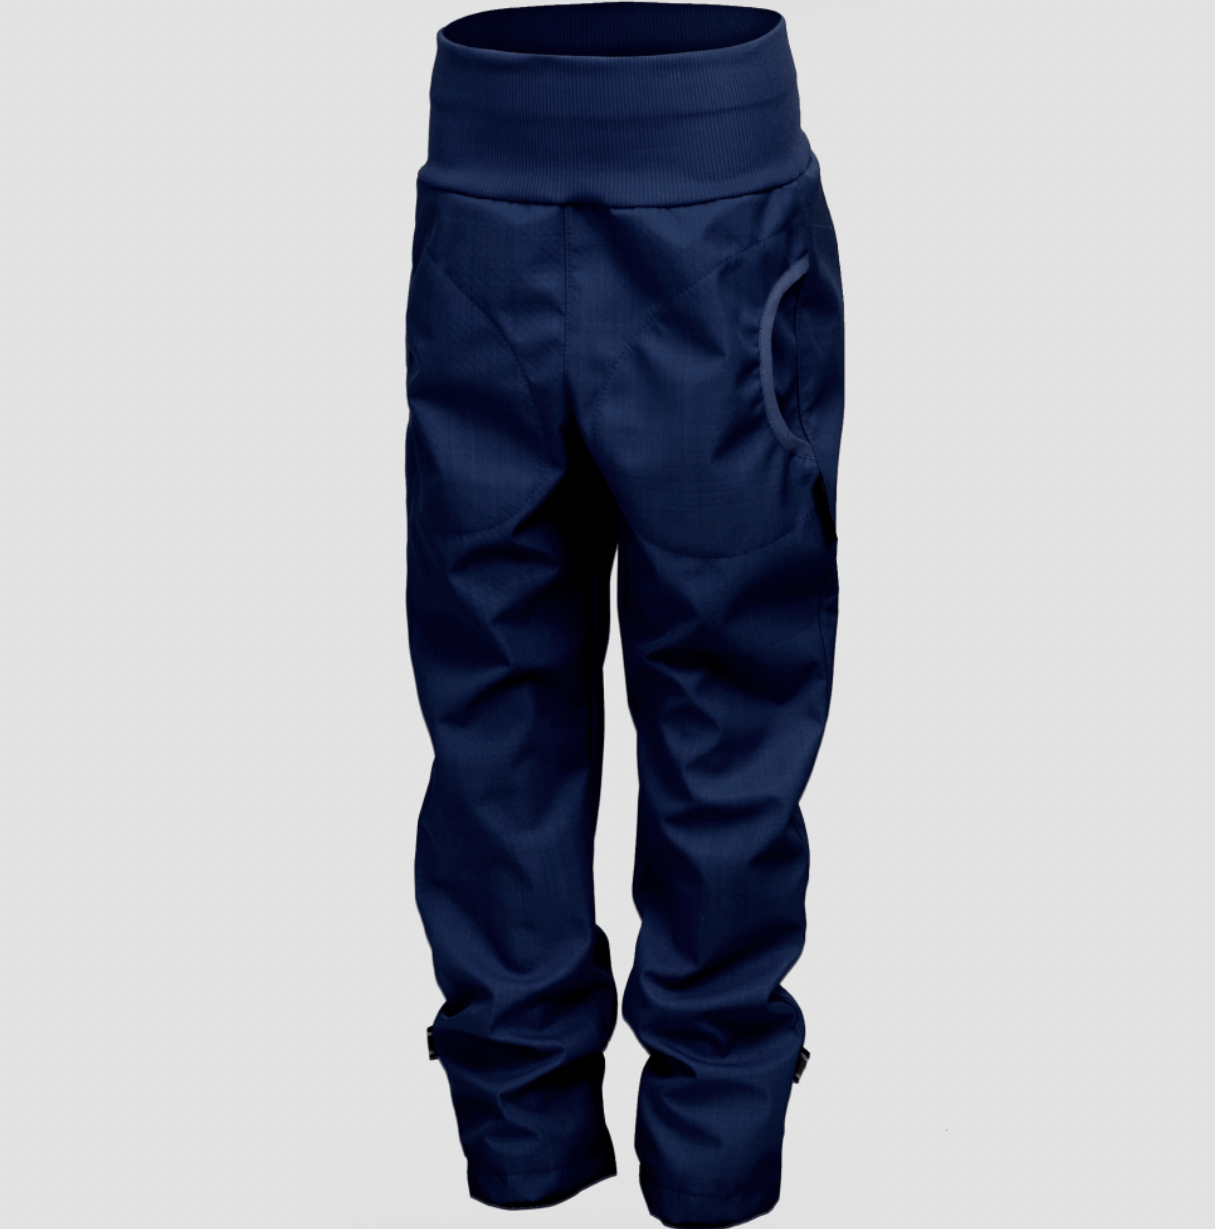 Softshellové kalhoty bambus/kapsy Jeans new vel. 98-104